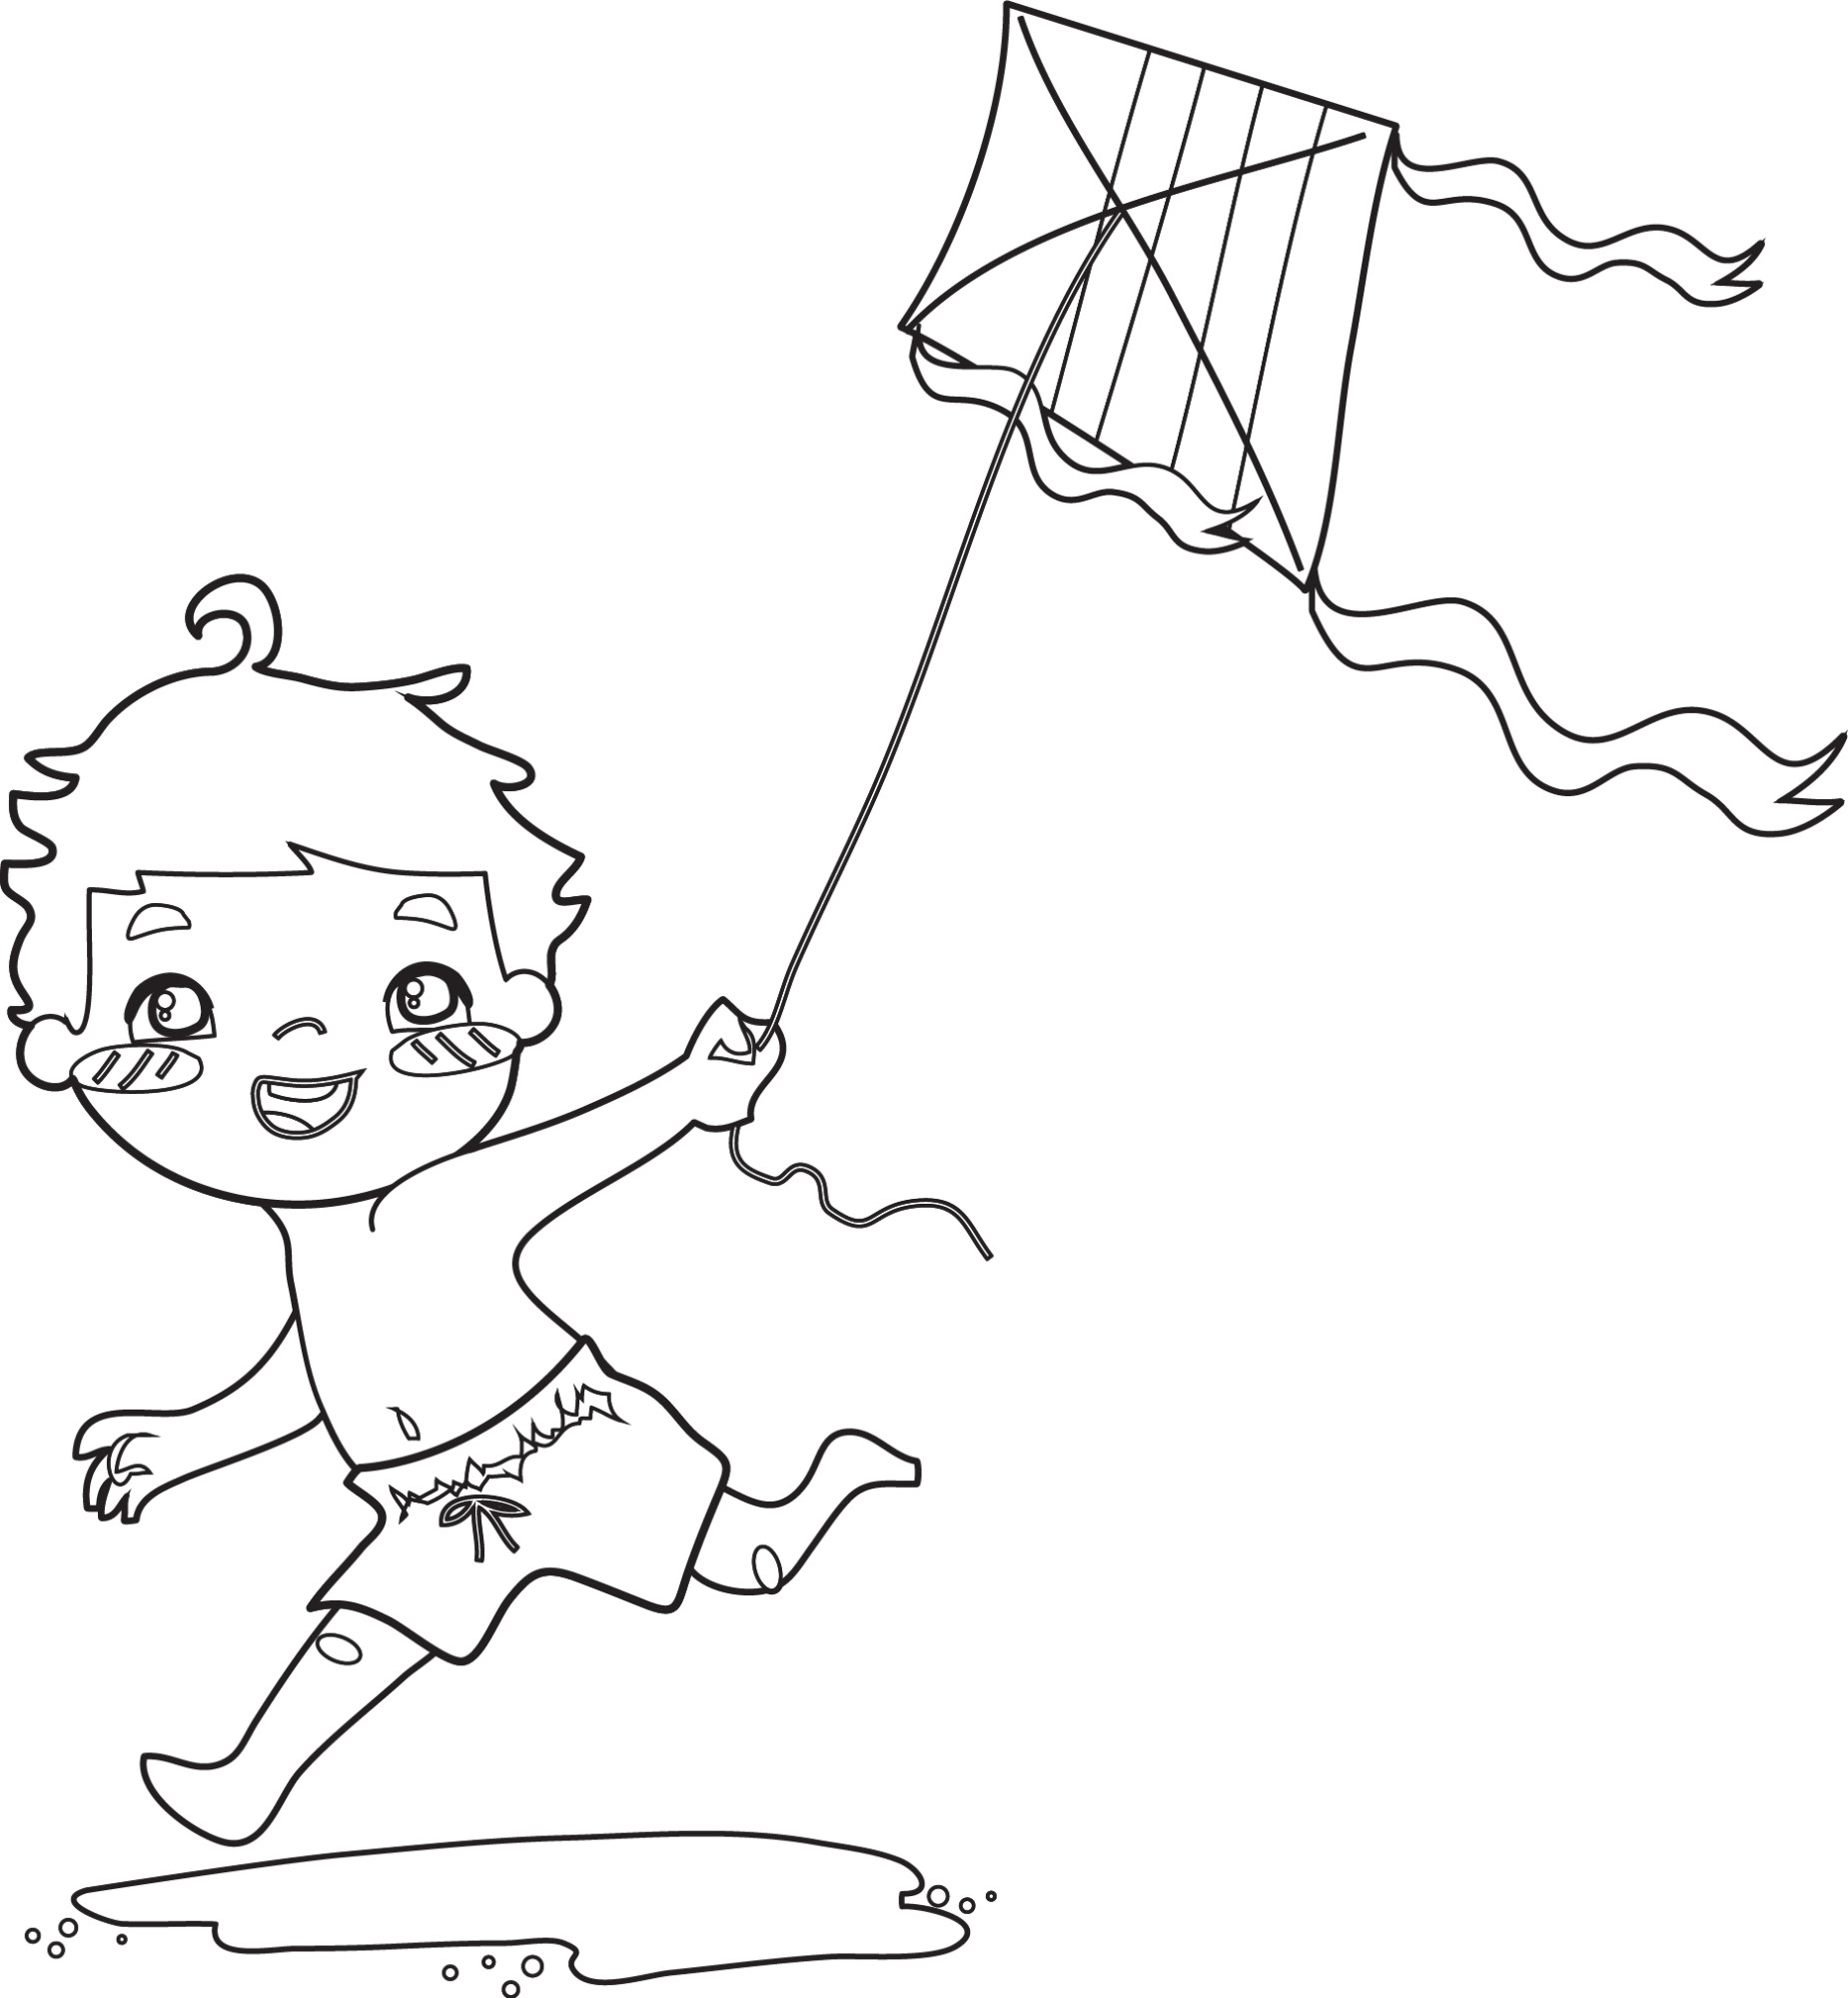 Раскраска для детей: маленький мальчик играет с воздушным змеем